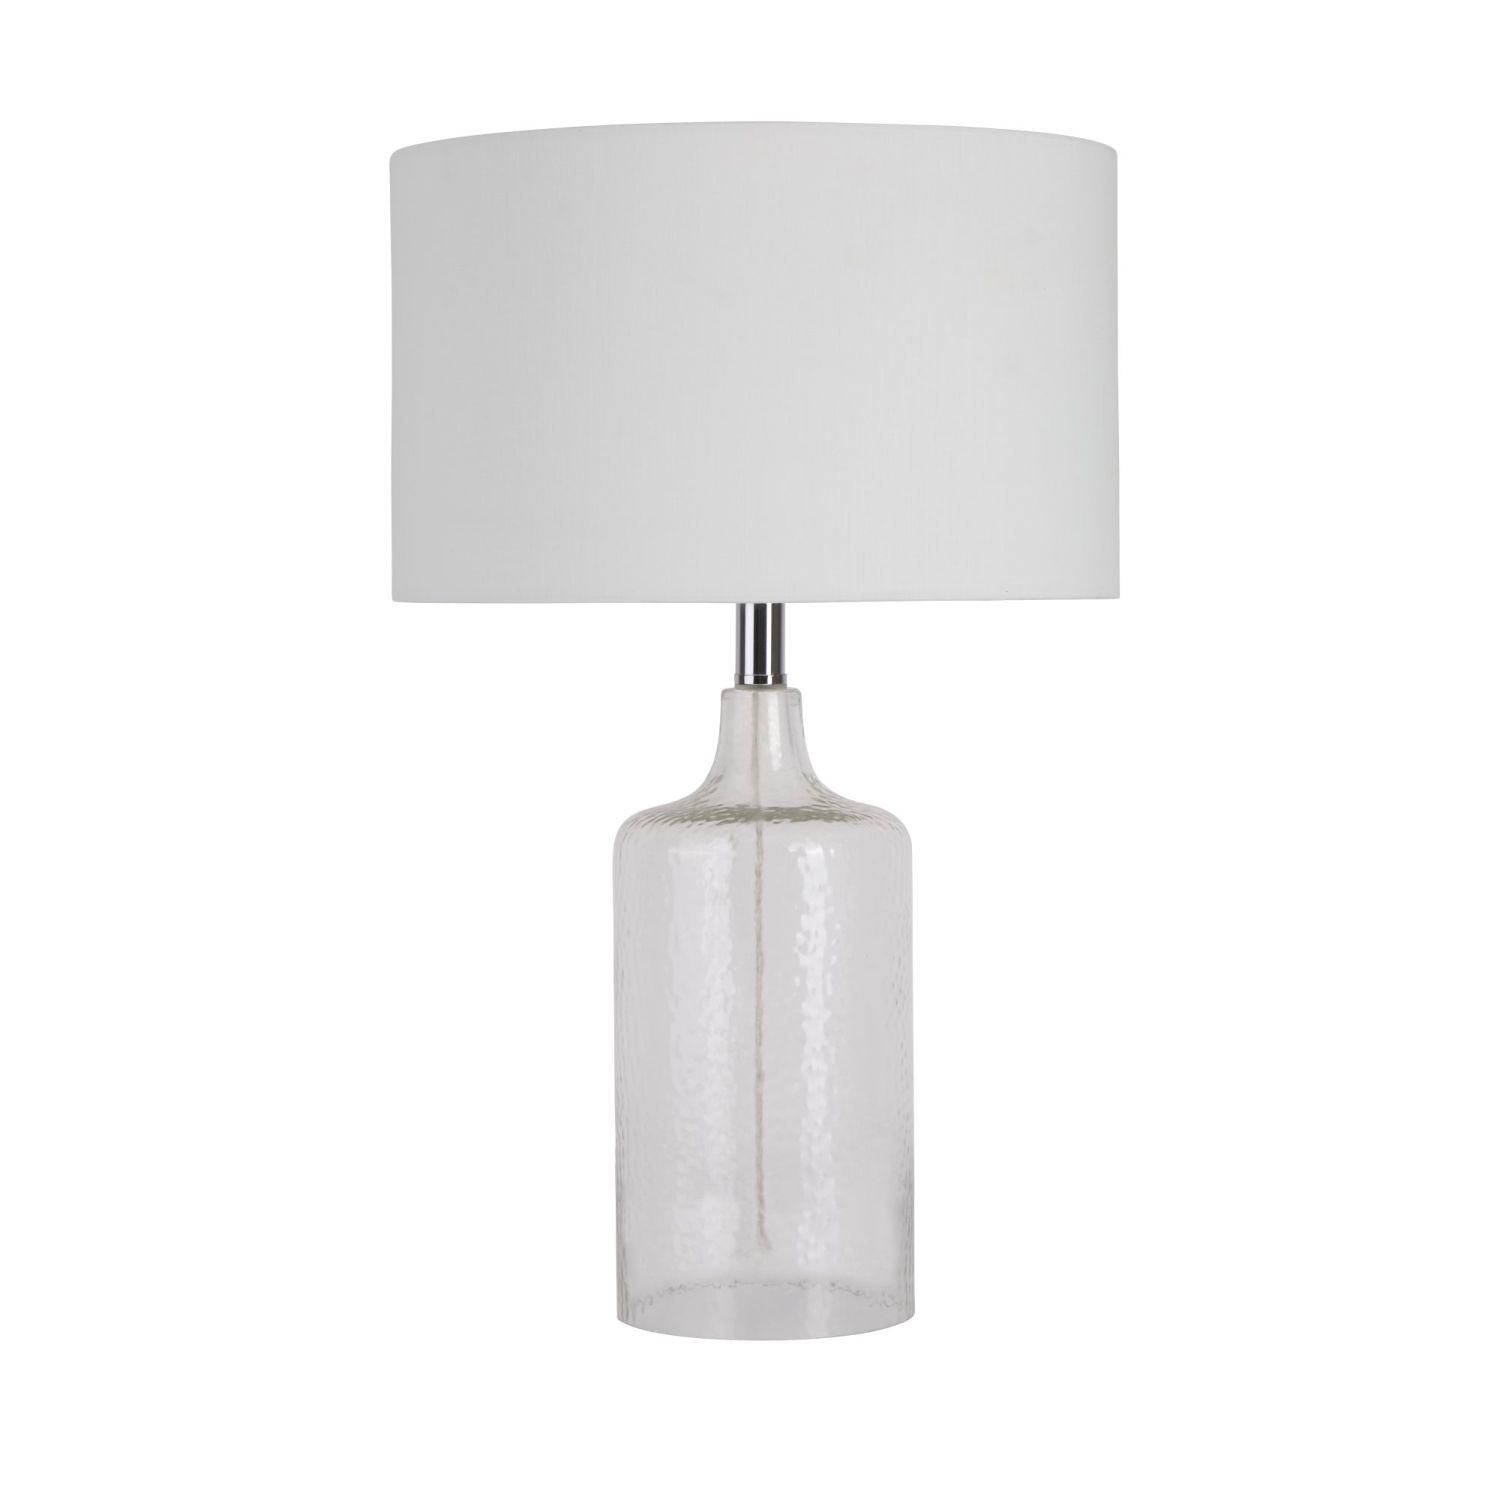 Tischlampe Glas Stoff Weiß 62 cm E27 elegant